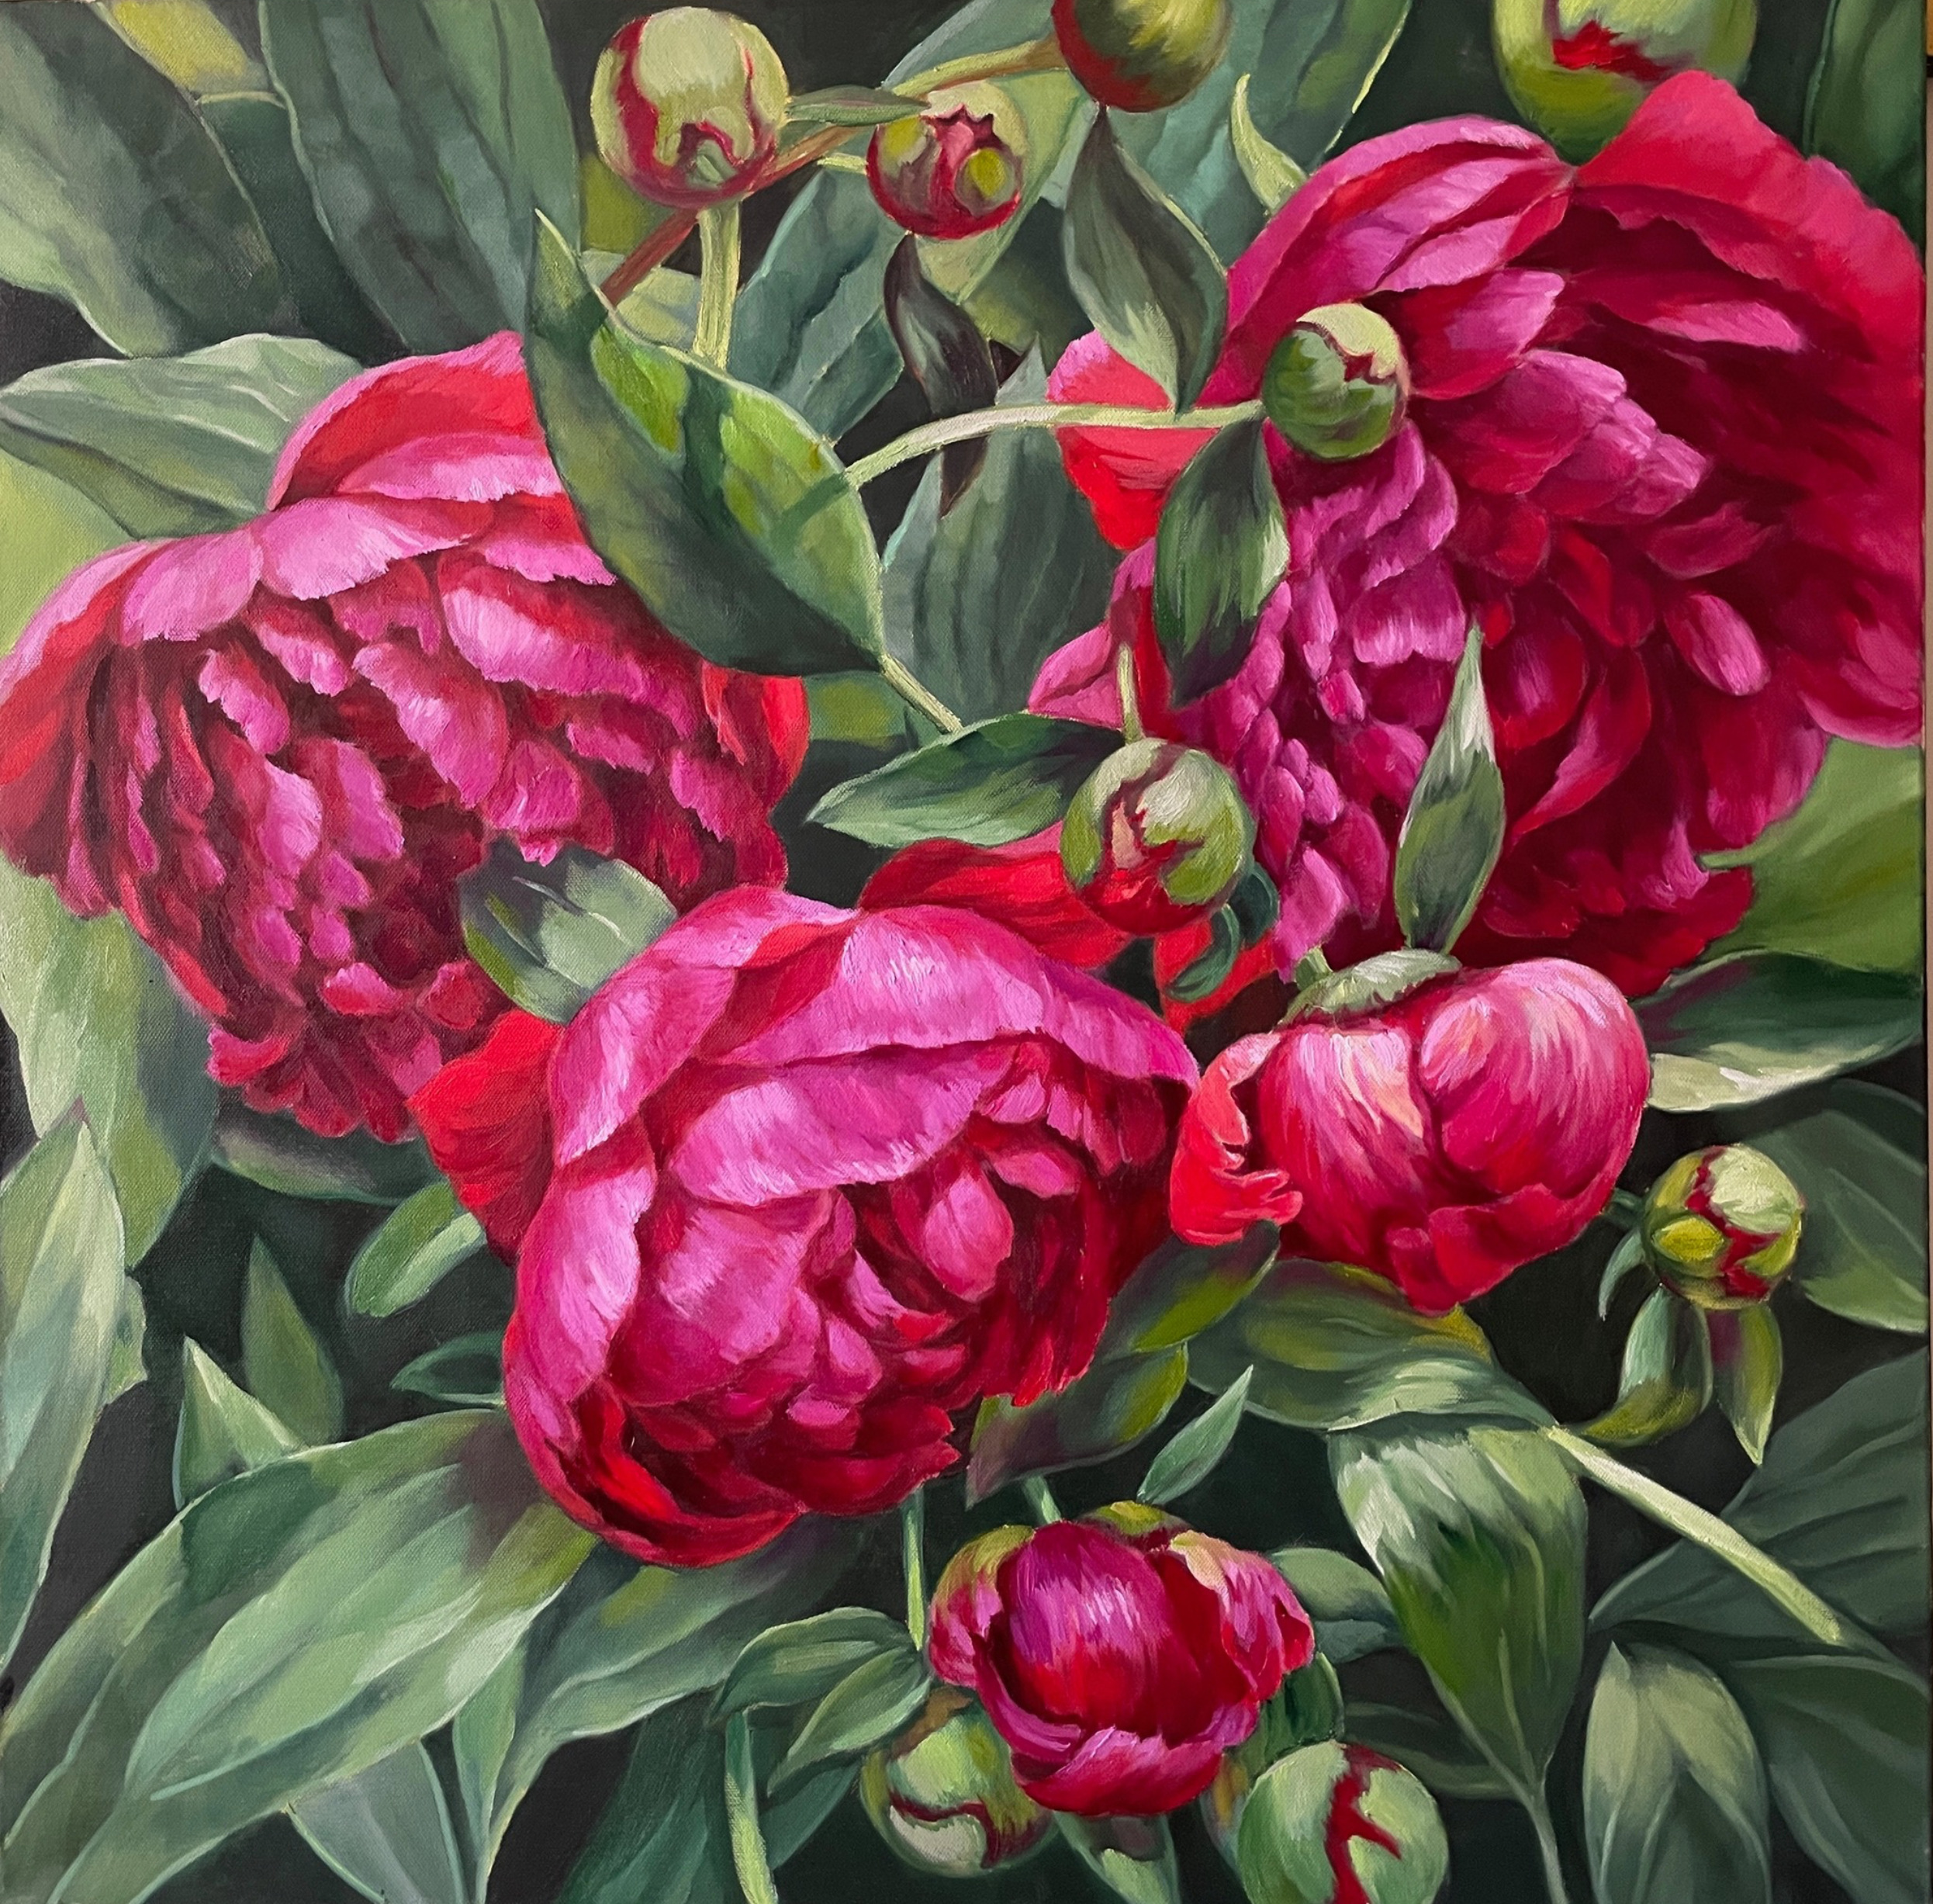 El cuadro "Sinfonía rosa silenciada" de Anna Reznikova muestra, con voluminosos trazos en técnica de impresión y con pinceles pintados sobre el lienzo, un precioso cuadro de flores. Las flores están pintadas de rosa, rosa y rojo, con hojas de color verde claro.